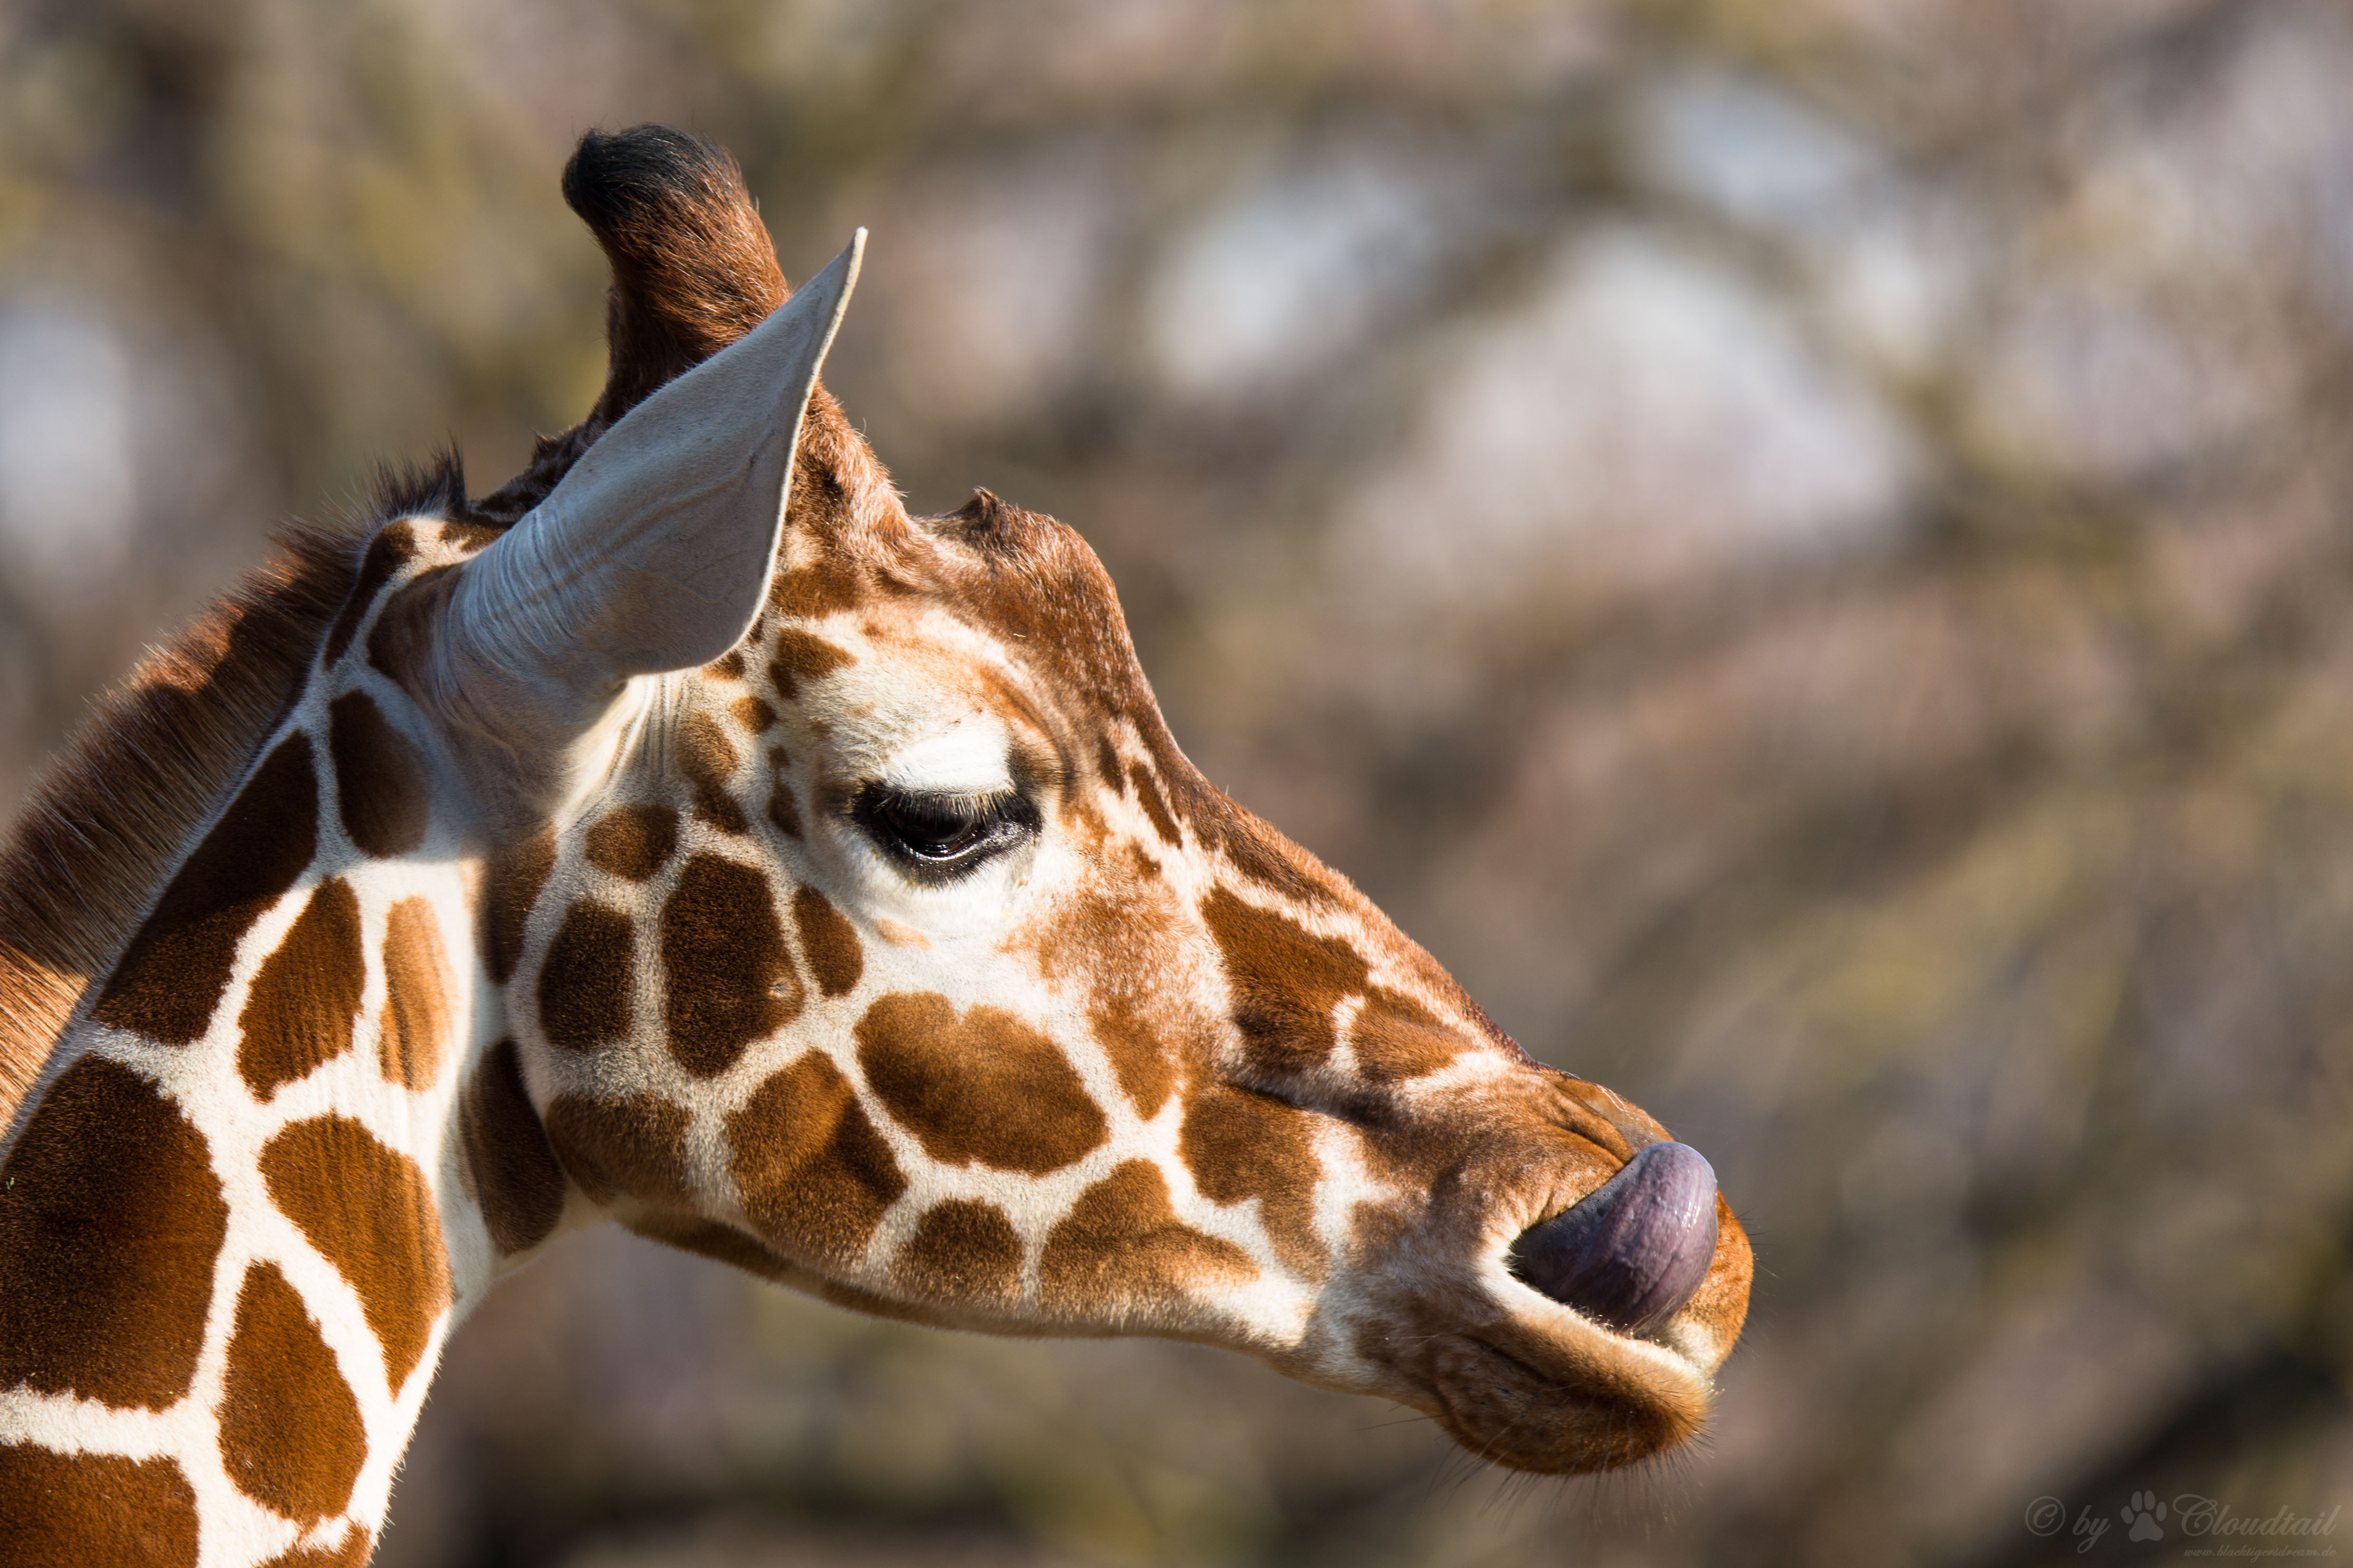 Zsiráf ölt meg egy operatőrt Dél-Afrikában